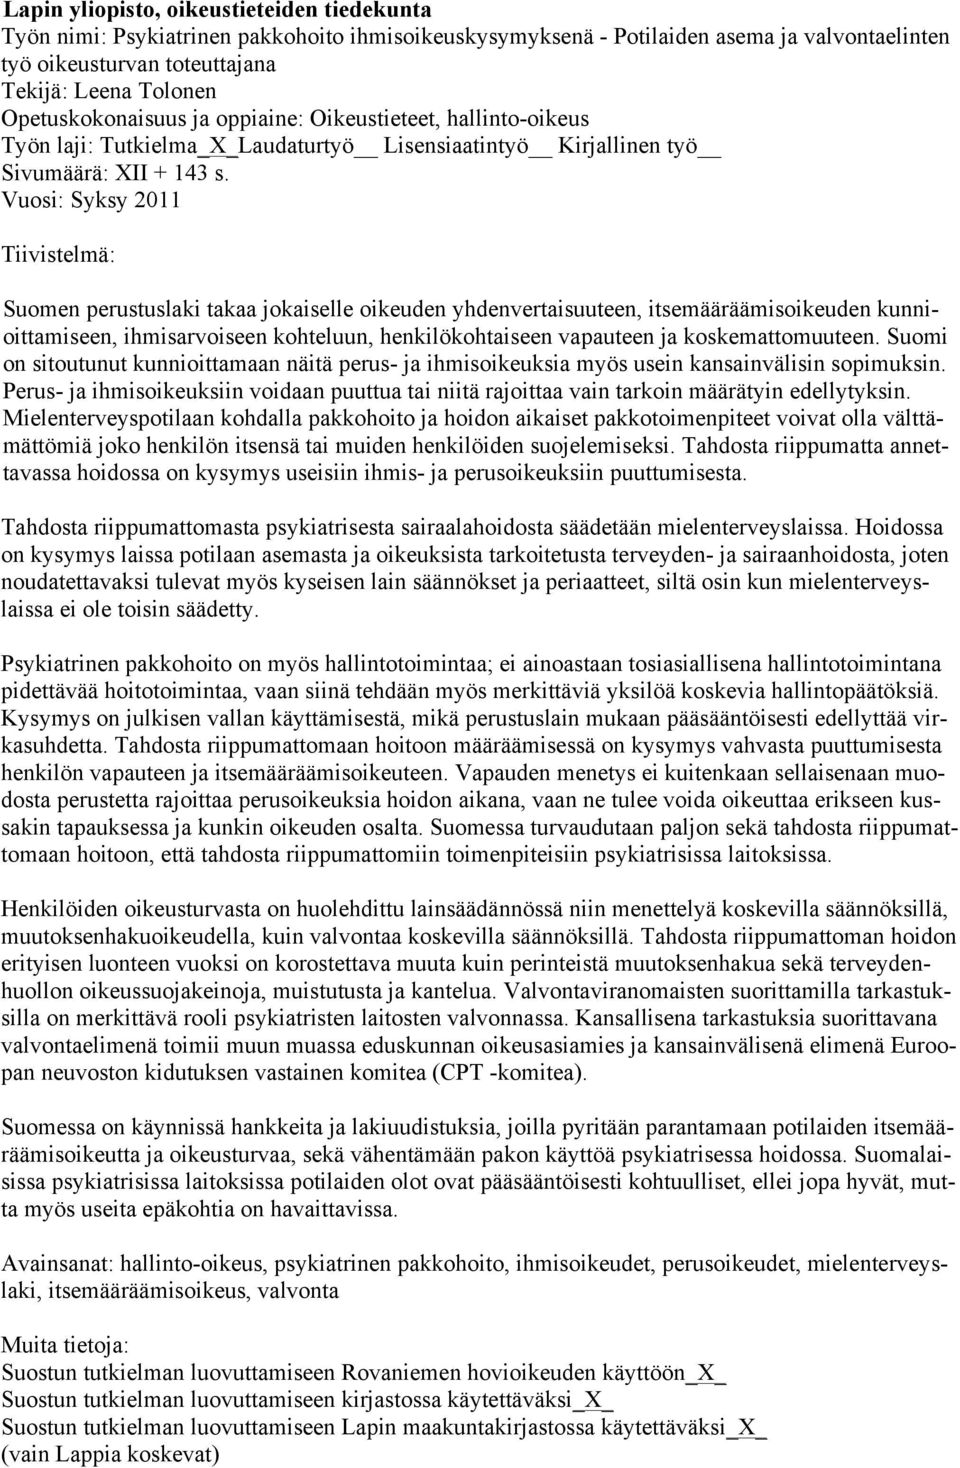 Vuosi: Syksy 2011 Tiivistelmä: Suomen perustuslaki takaa jokaiselle oikeuden yhdenvertaisuuteen, itsemääräämisoikeuden kunnioittamiseen, ihmisarvoiseen kohteluun, henkilökohtaiseen vapauteen ja